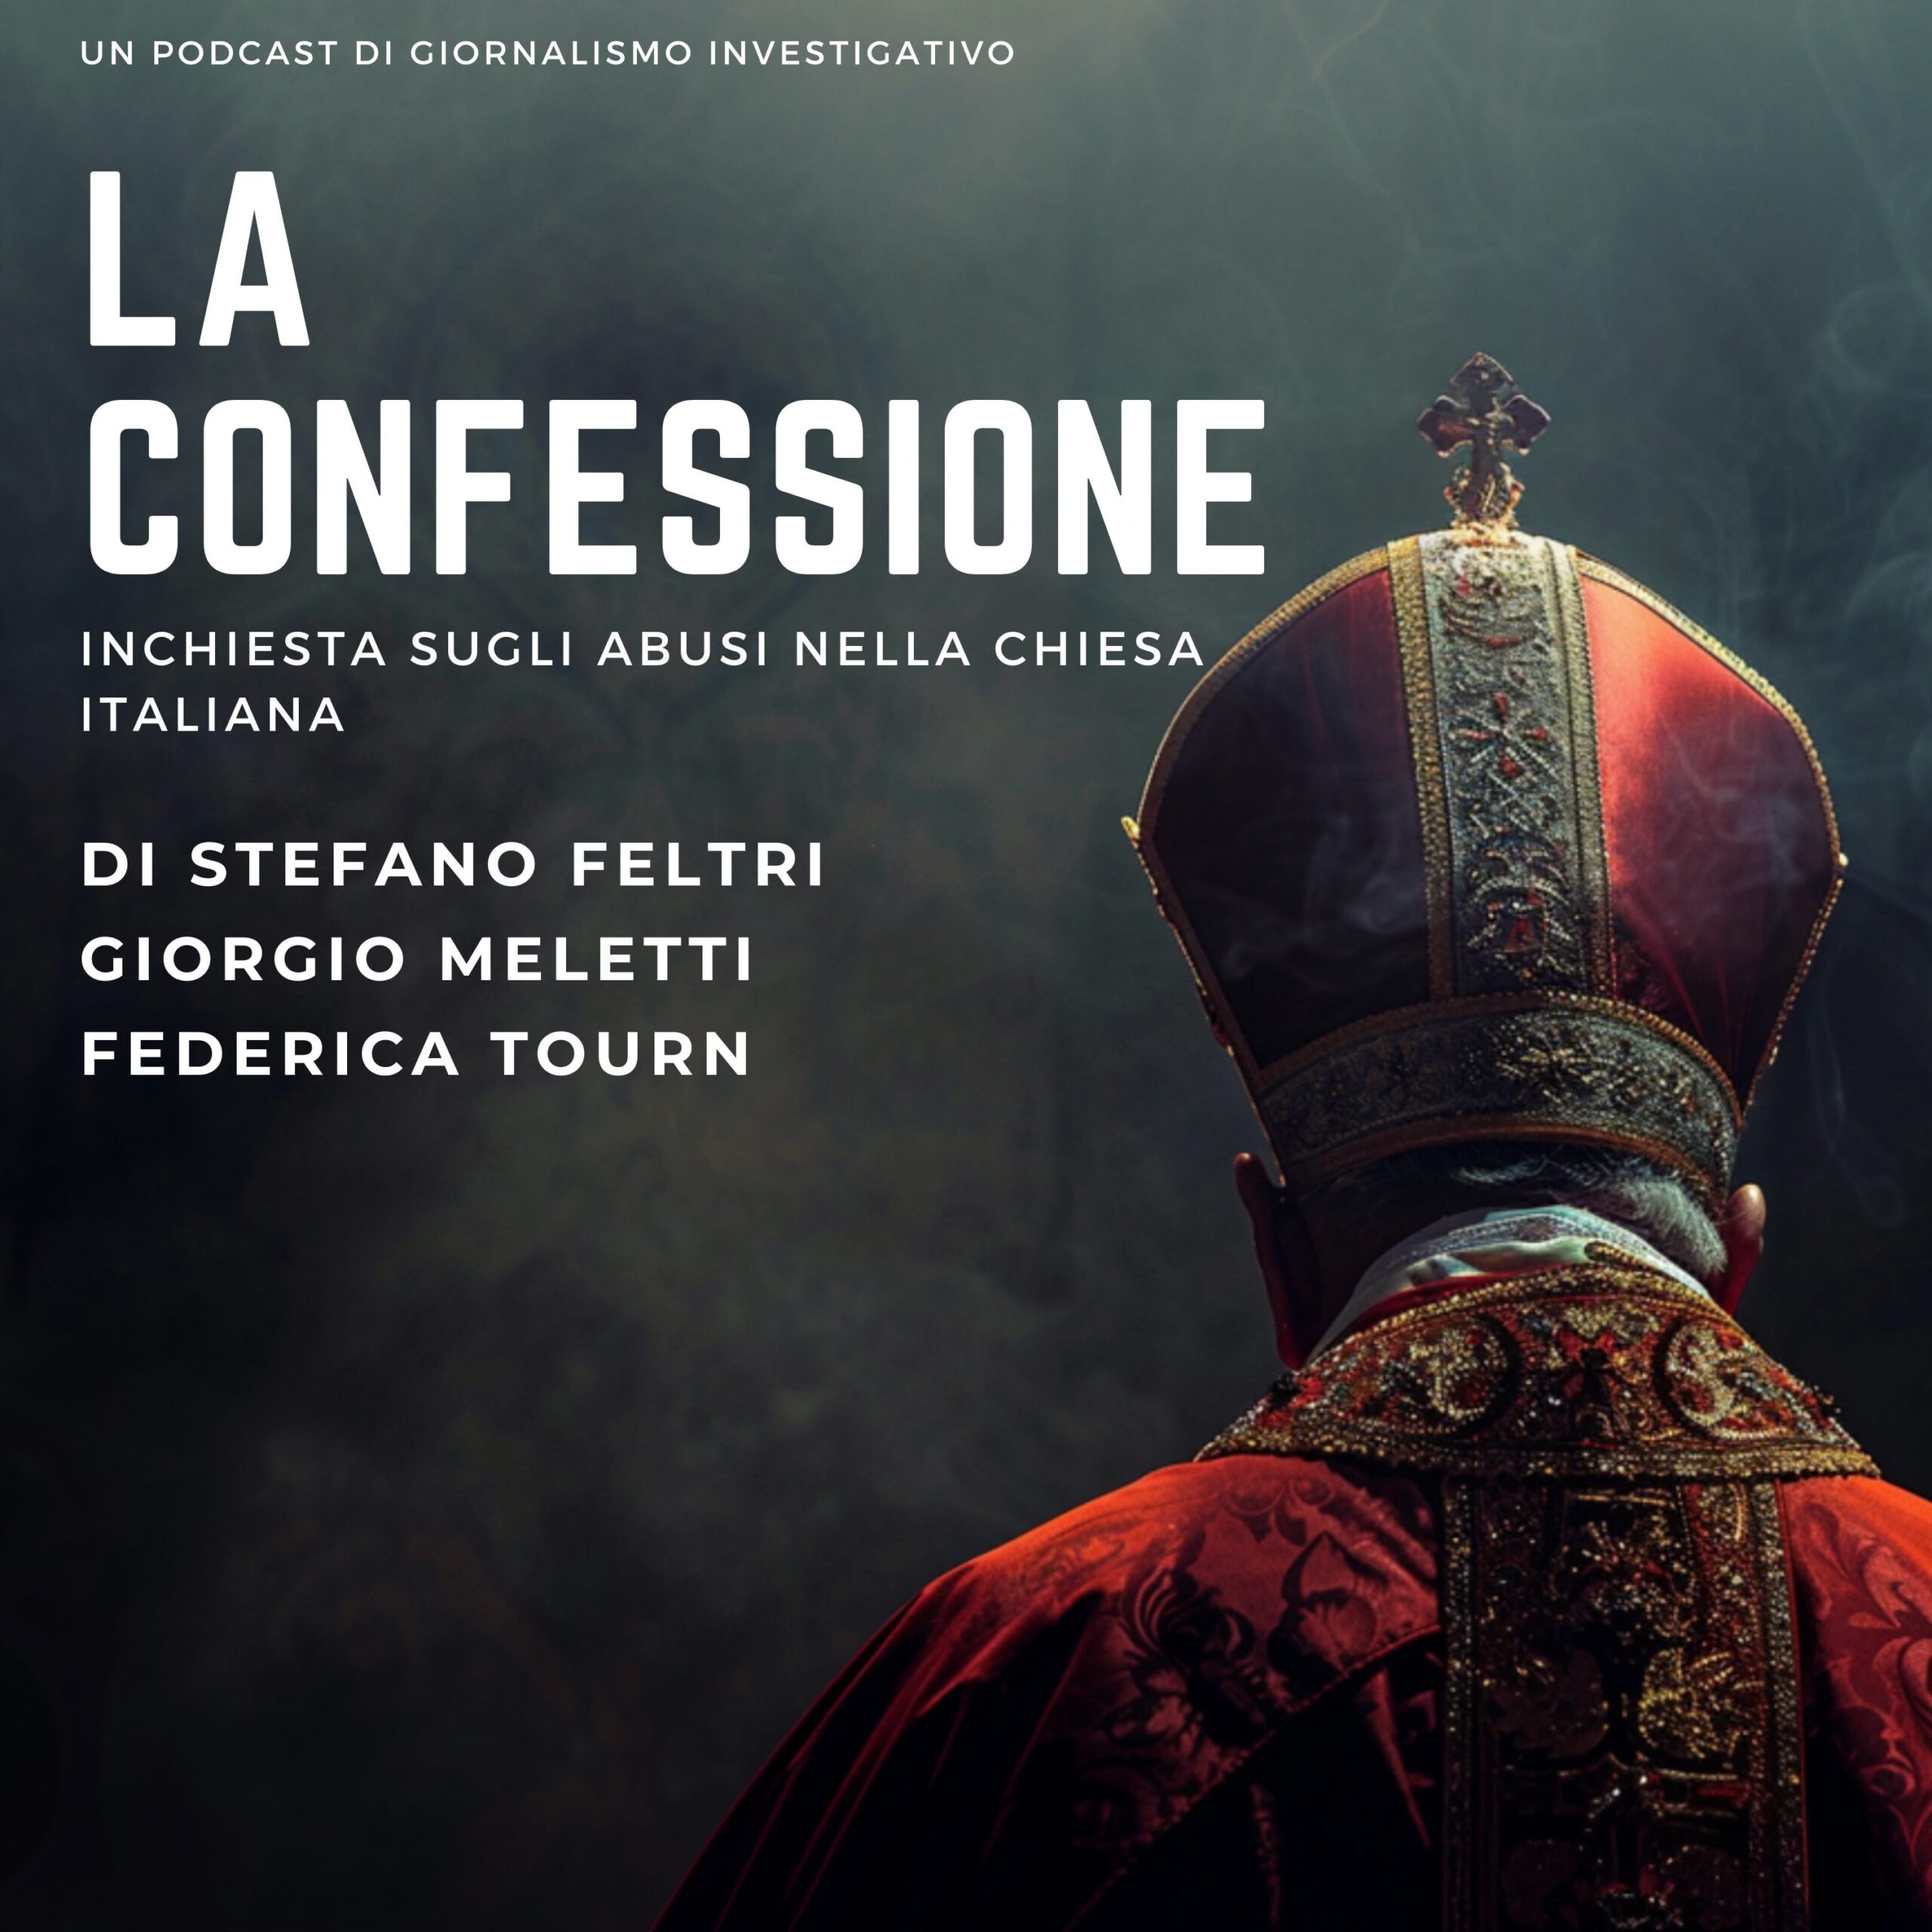 “La confessione – Inchiesta sugli abusi nella Chiesa Italiana”